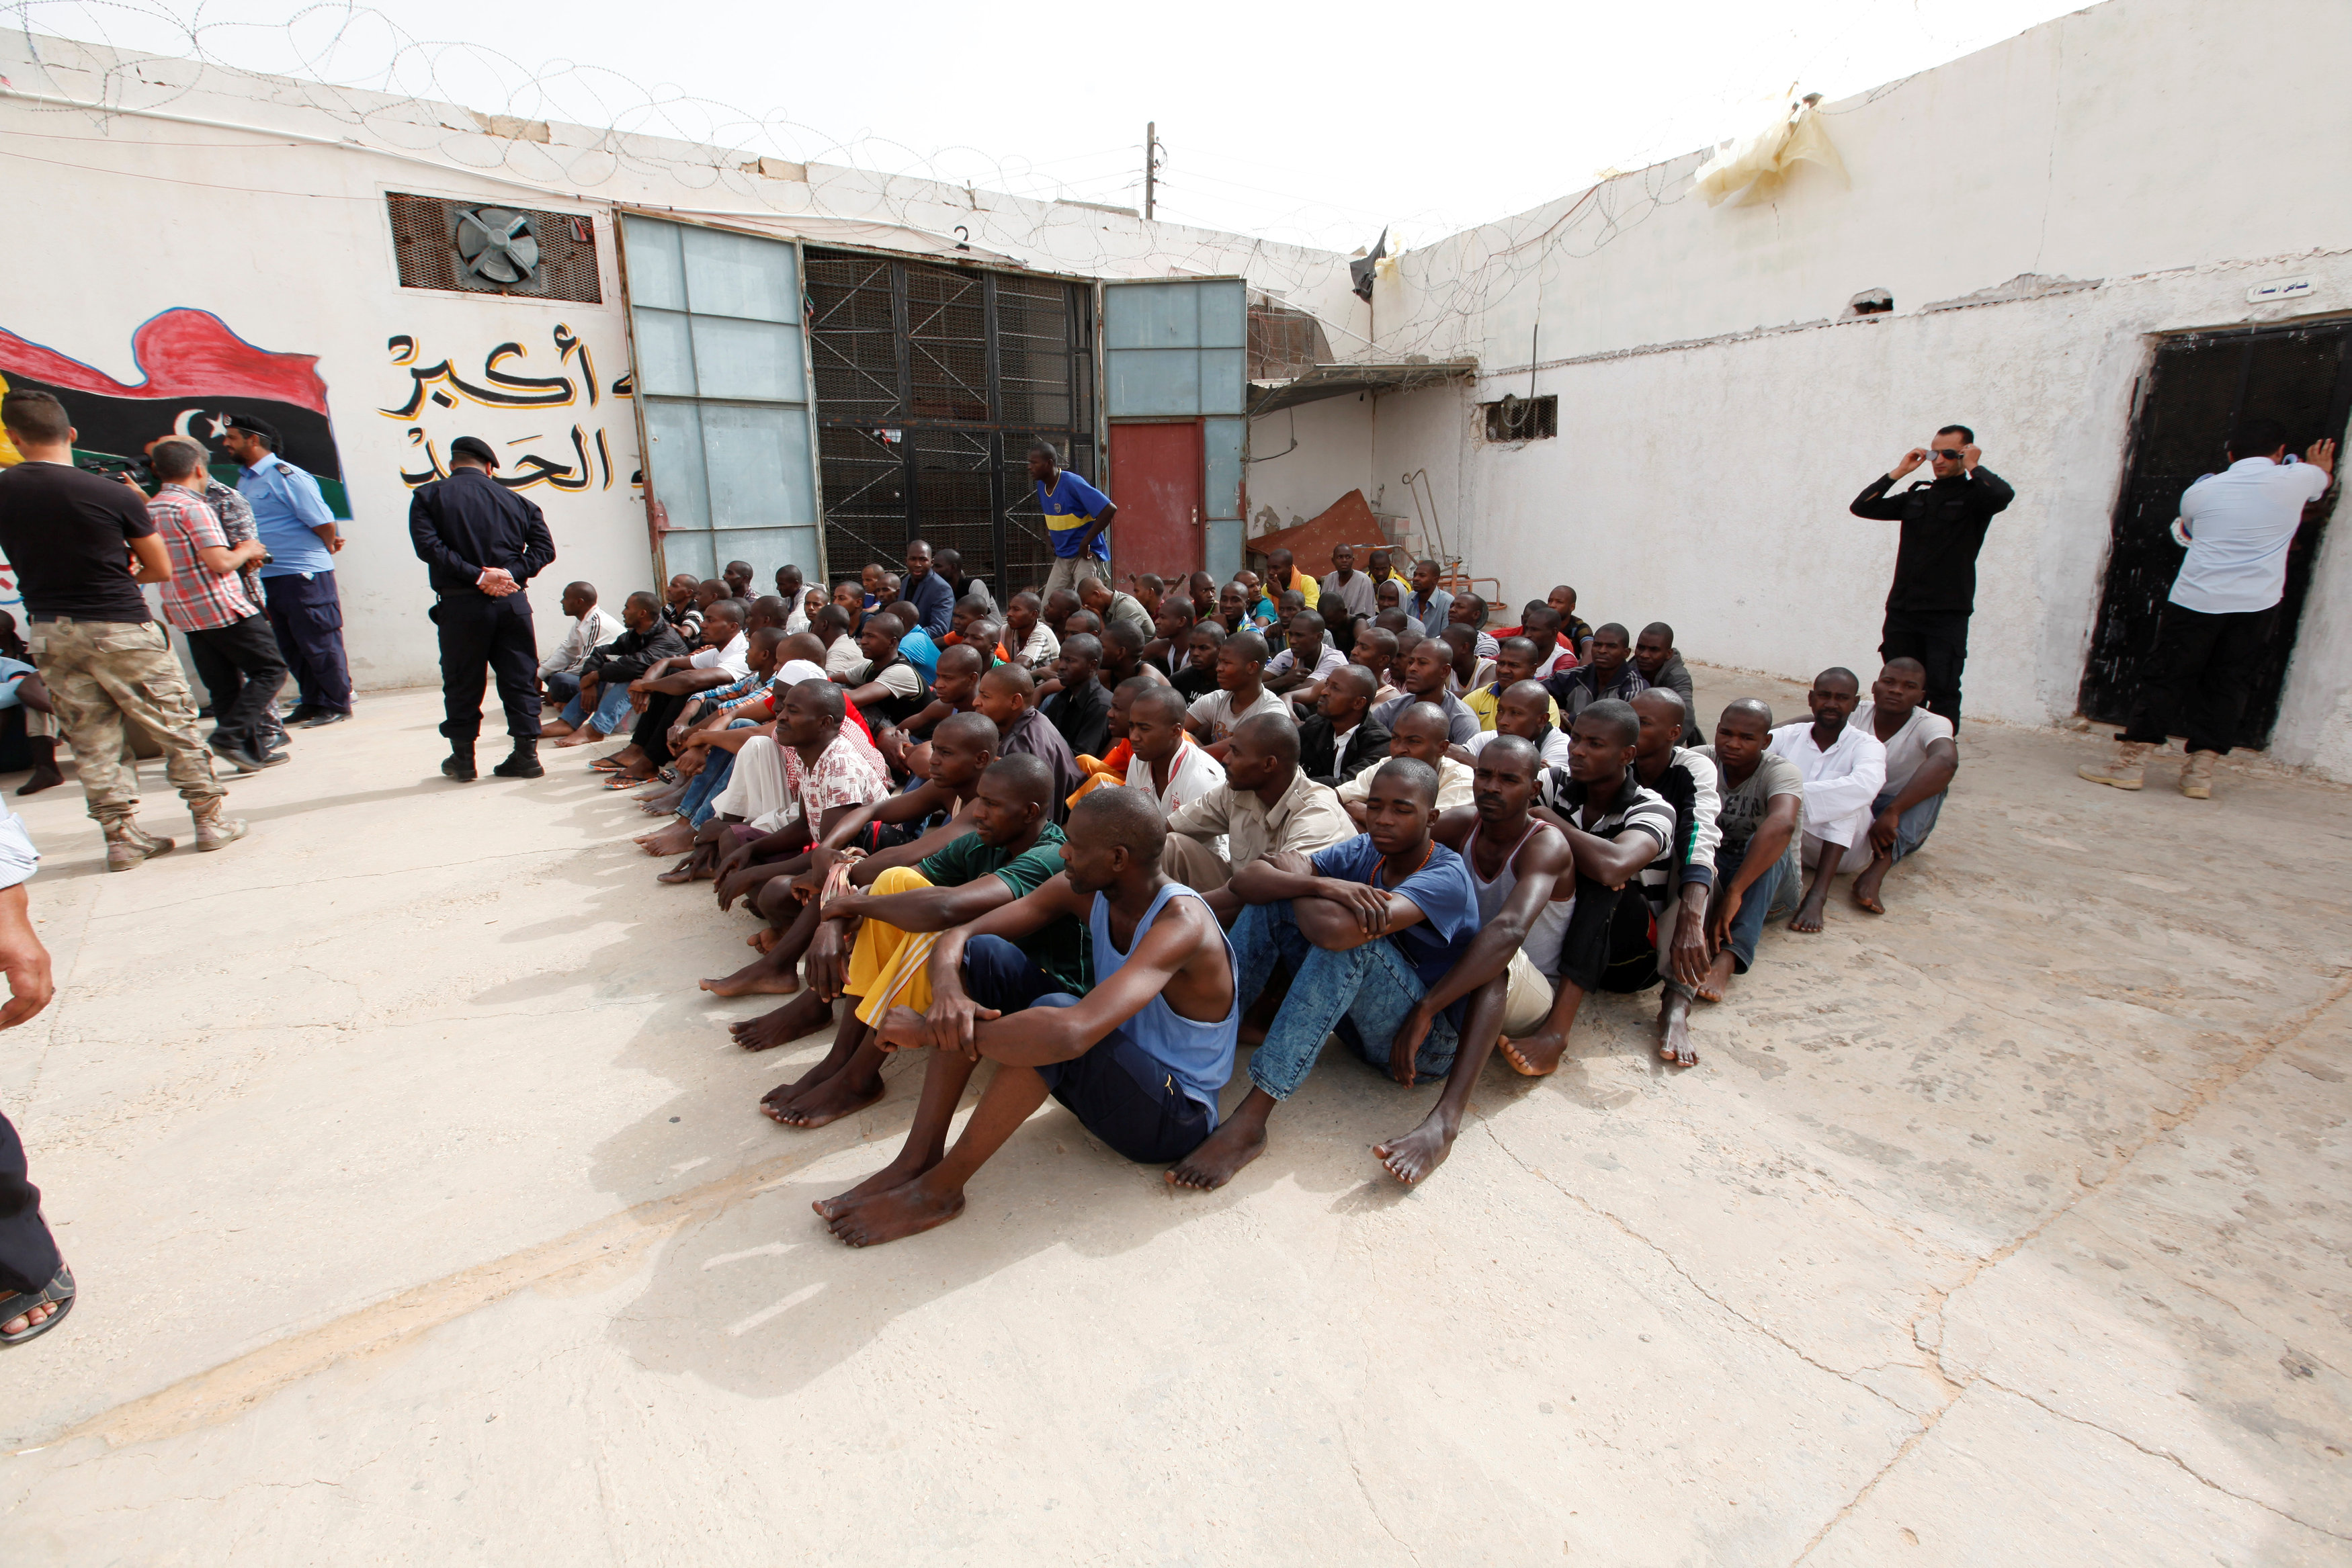 Η ΕΕ θα βοηθήσει τη Λιβύη να σταματήσει τους διακινητές μεταναστών